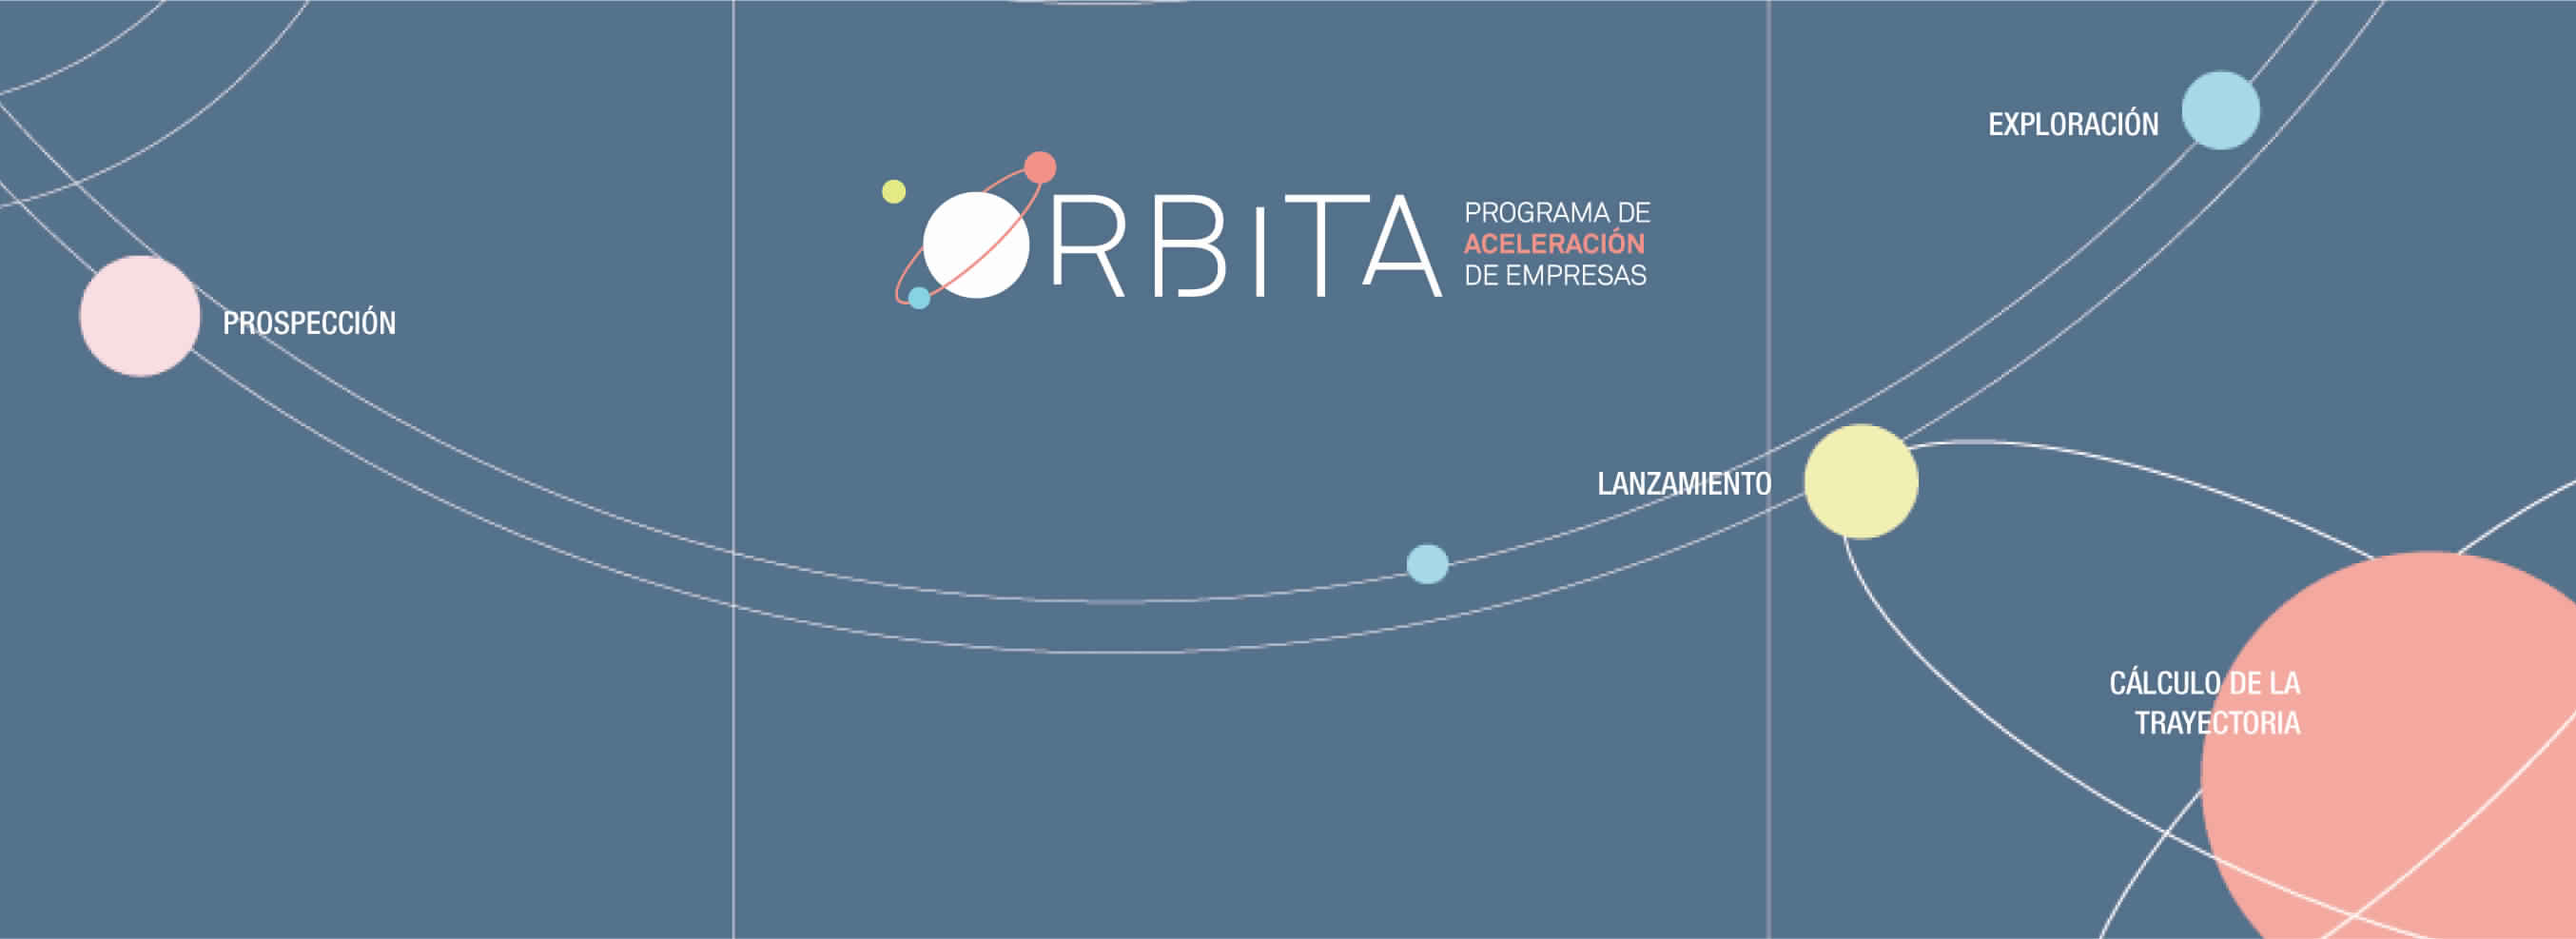 احصل على تمويل قدره 20,000 يورو مع برنامج مسرعة الأعمال Orbit!